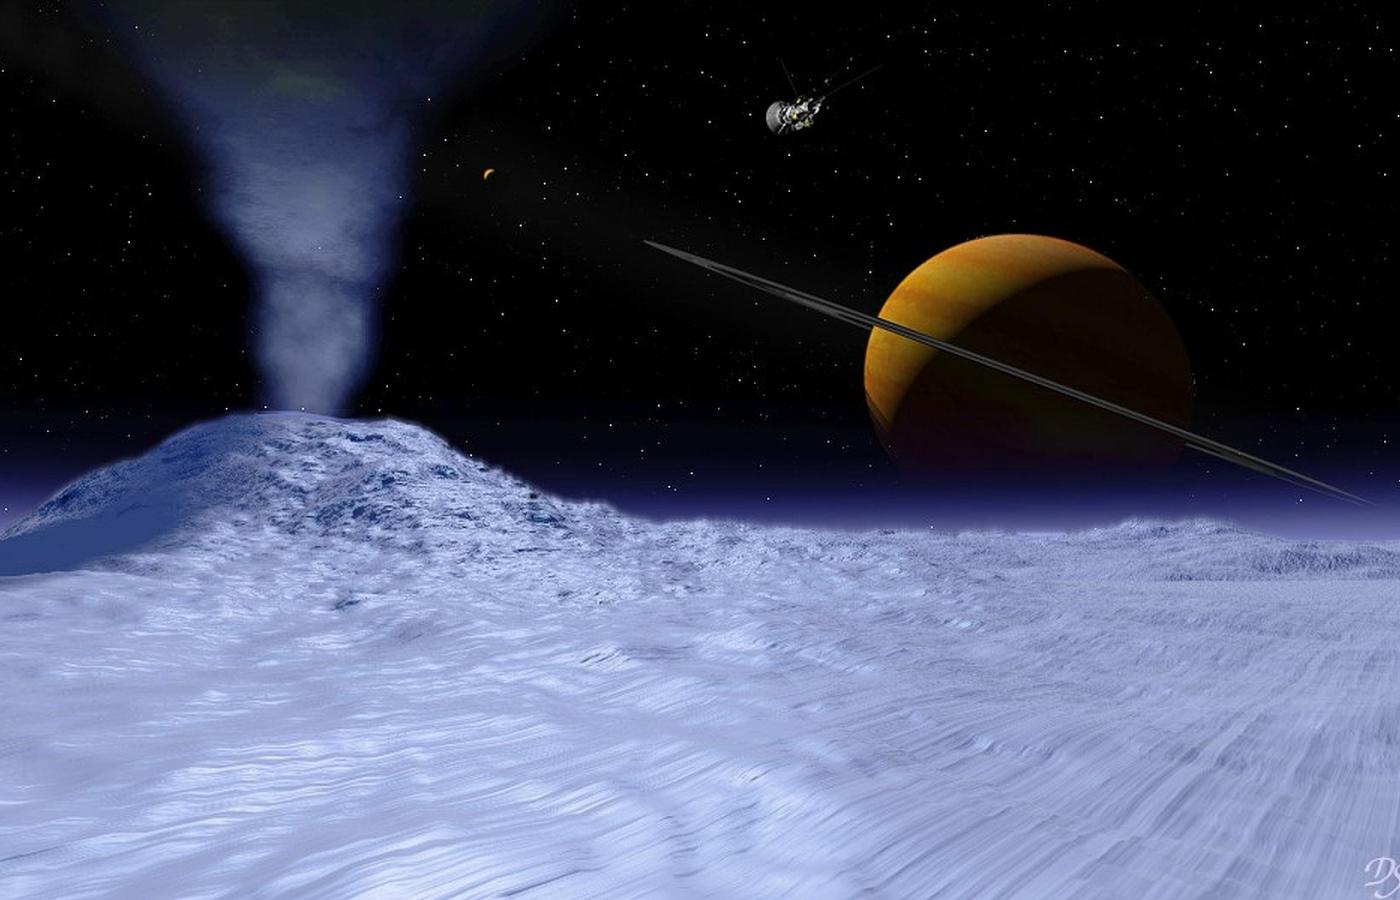 Saturn widziany z powierzchni Enceladusa. Wizja artystyczna.